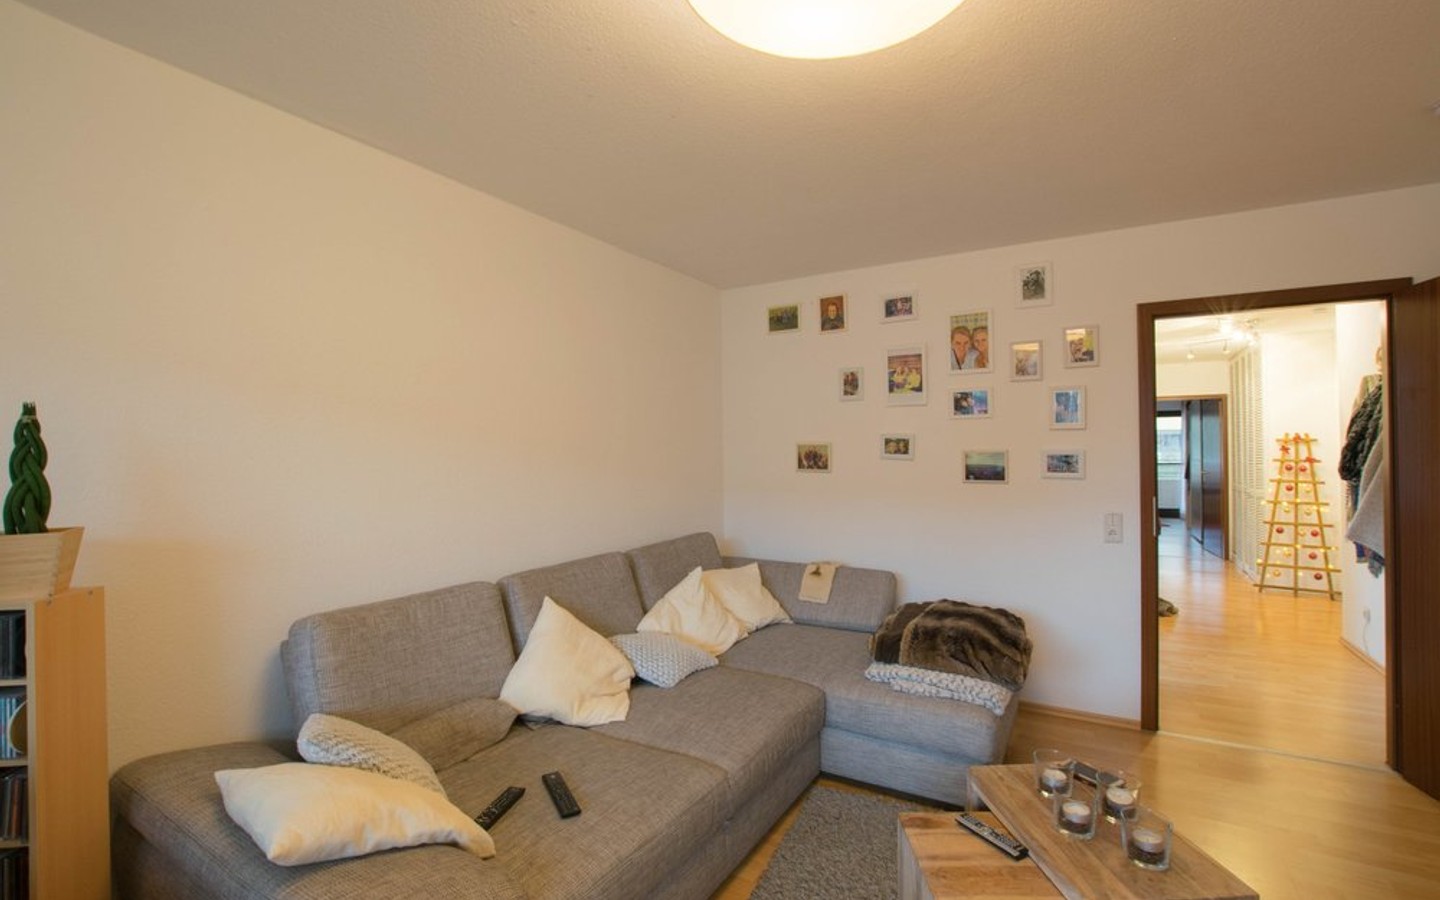 Wohnzimmer - HD-Handschuhsheim: Tolle Wohnung mit 2 Balkonen und TG-Stellplatz!